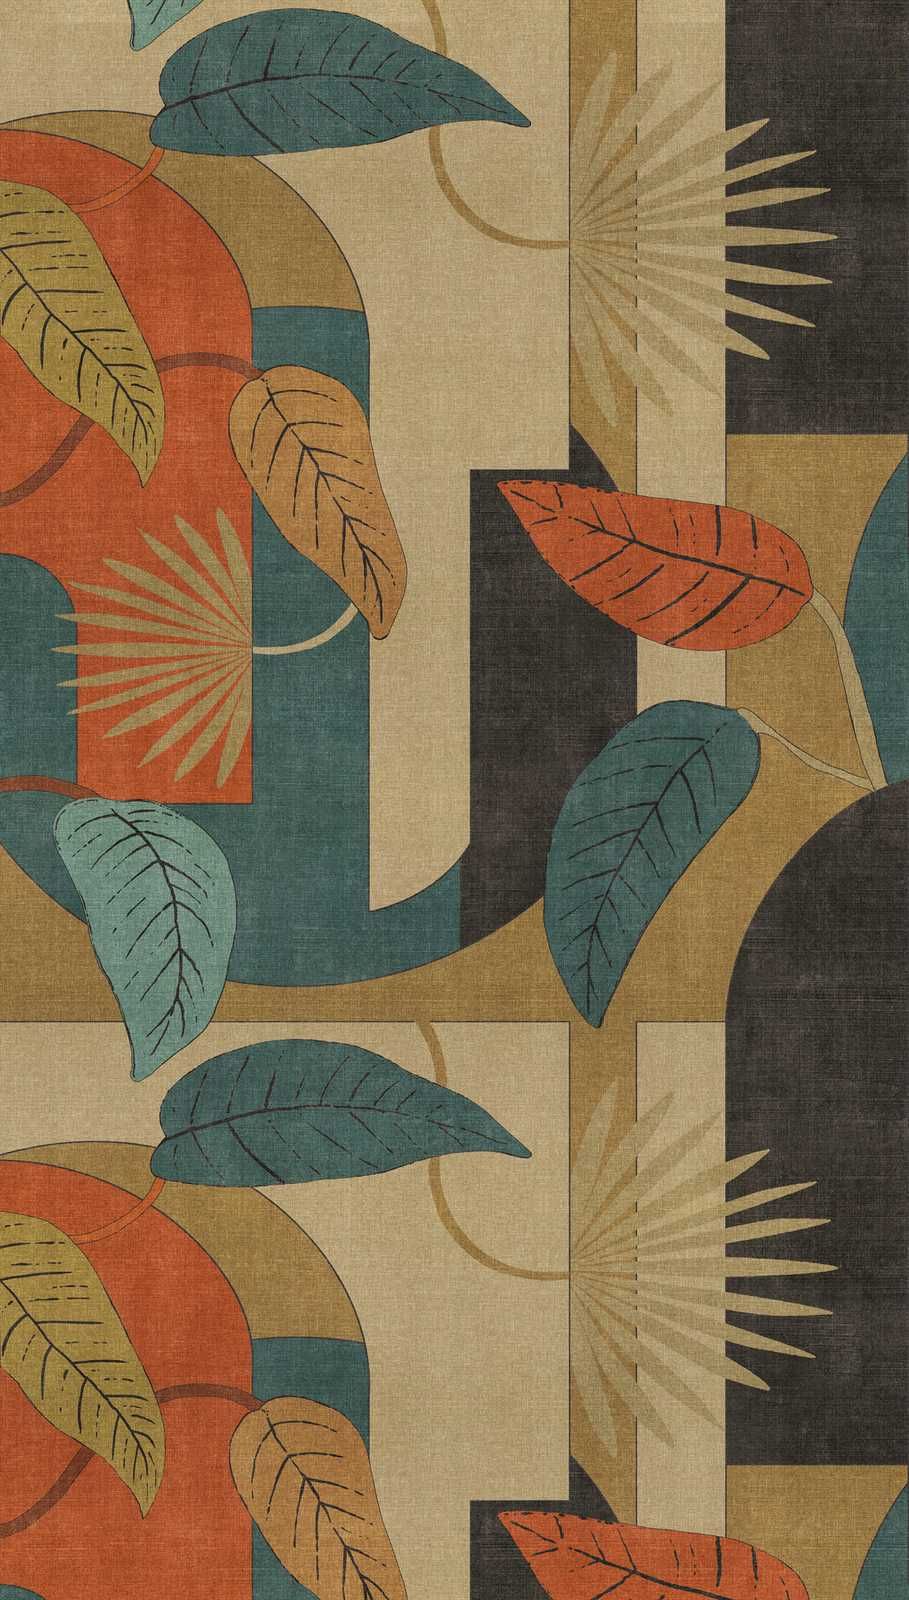             Abstract vliesbehang met bladeren en grafische patronen - beige, blauw, rood
        